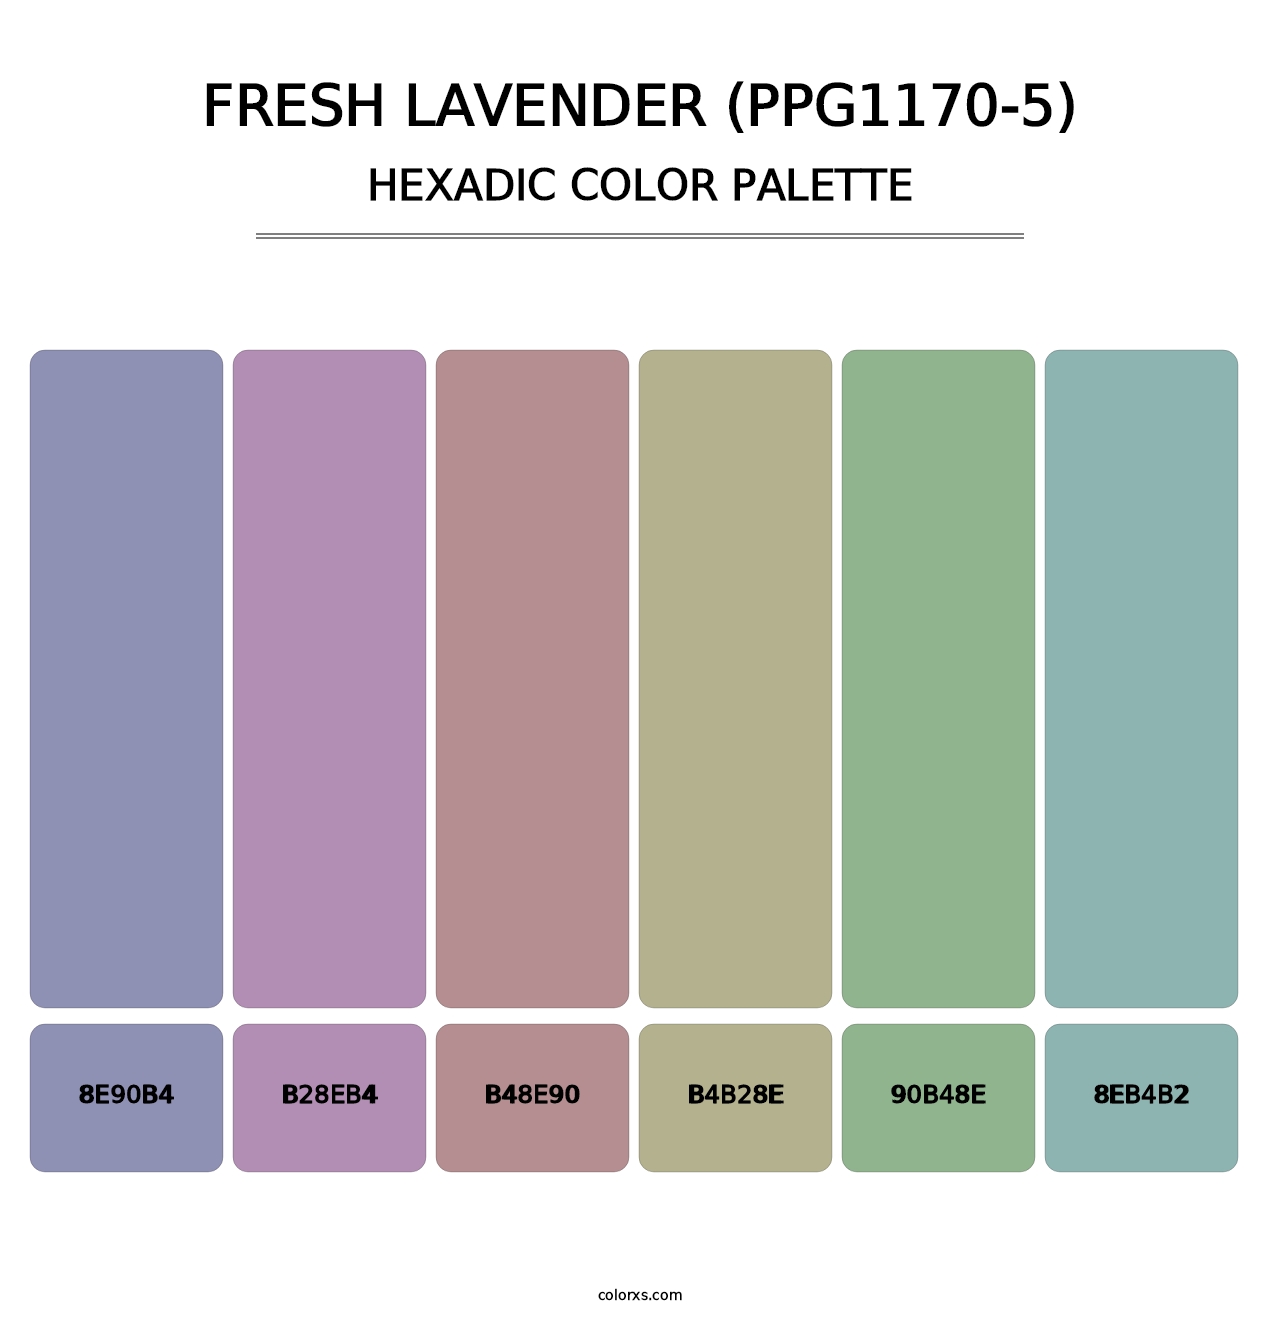 Fresh Lavender (PPG1170-5) - Hexadic Color Palette